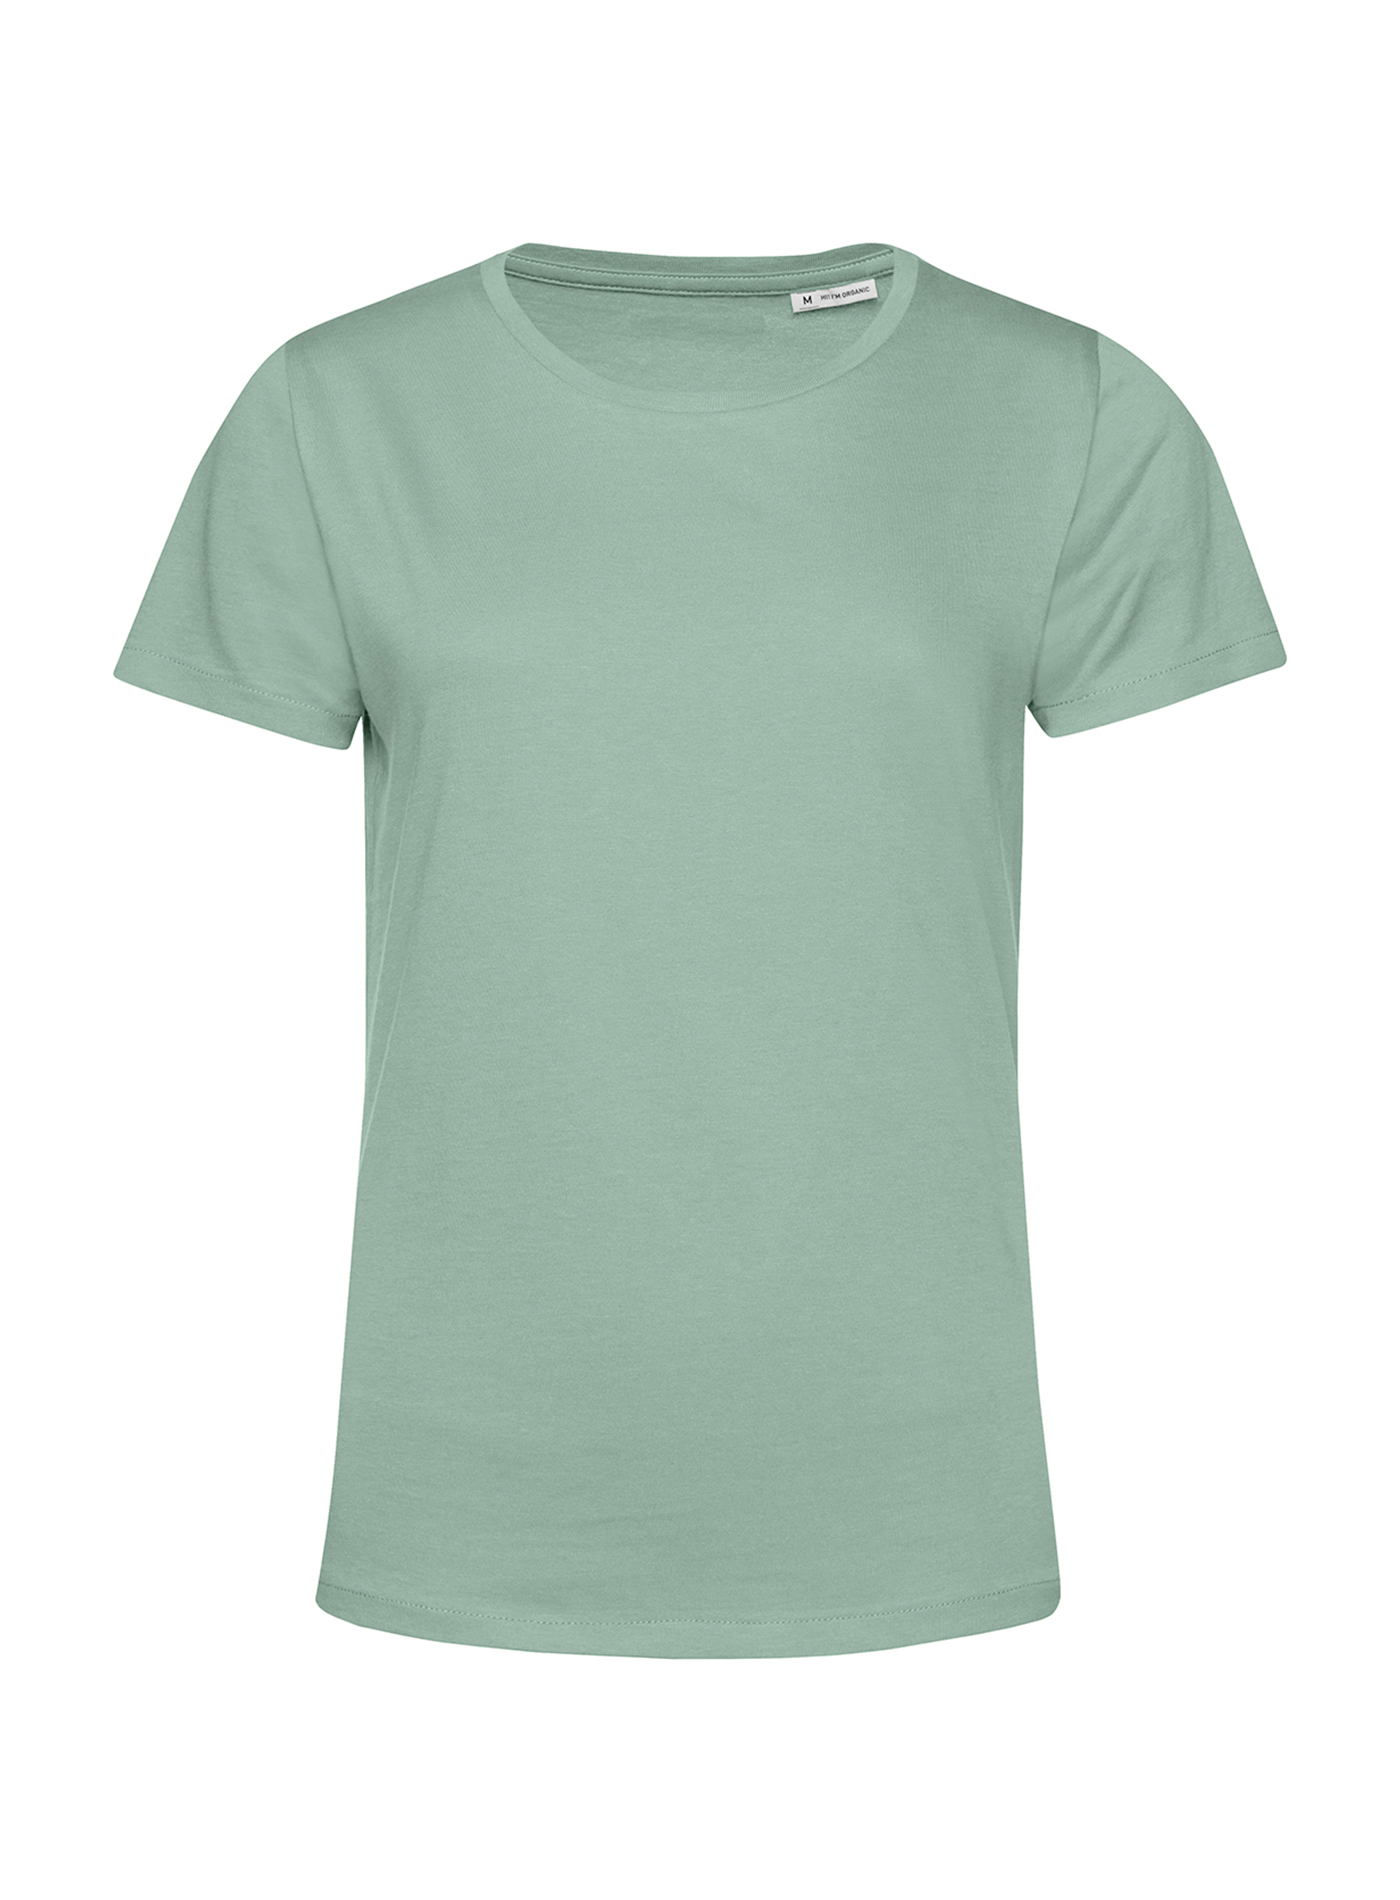 Dámské tričko B&C Collection Organic - Mentolově zelená XL